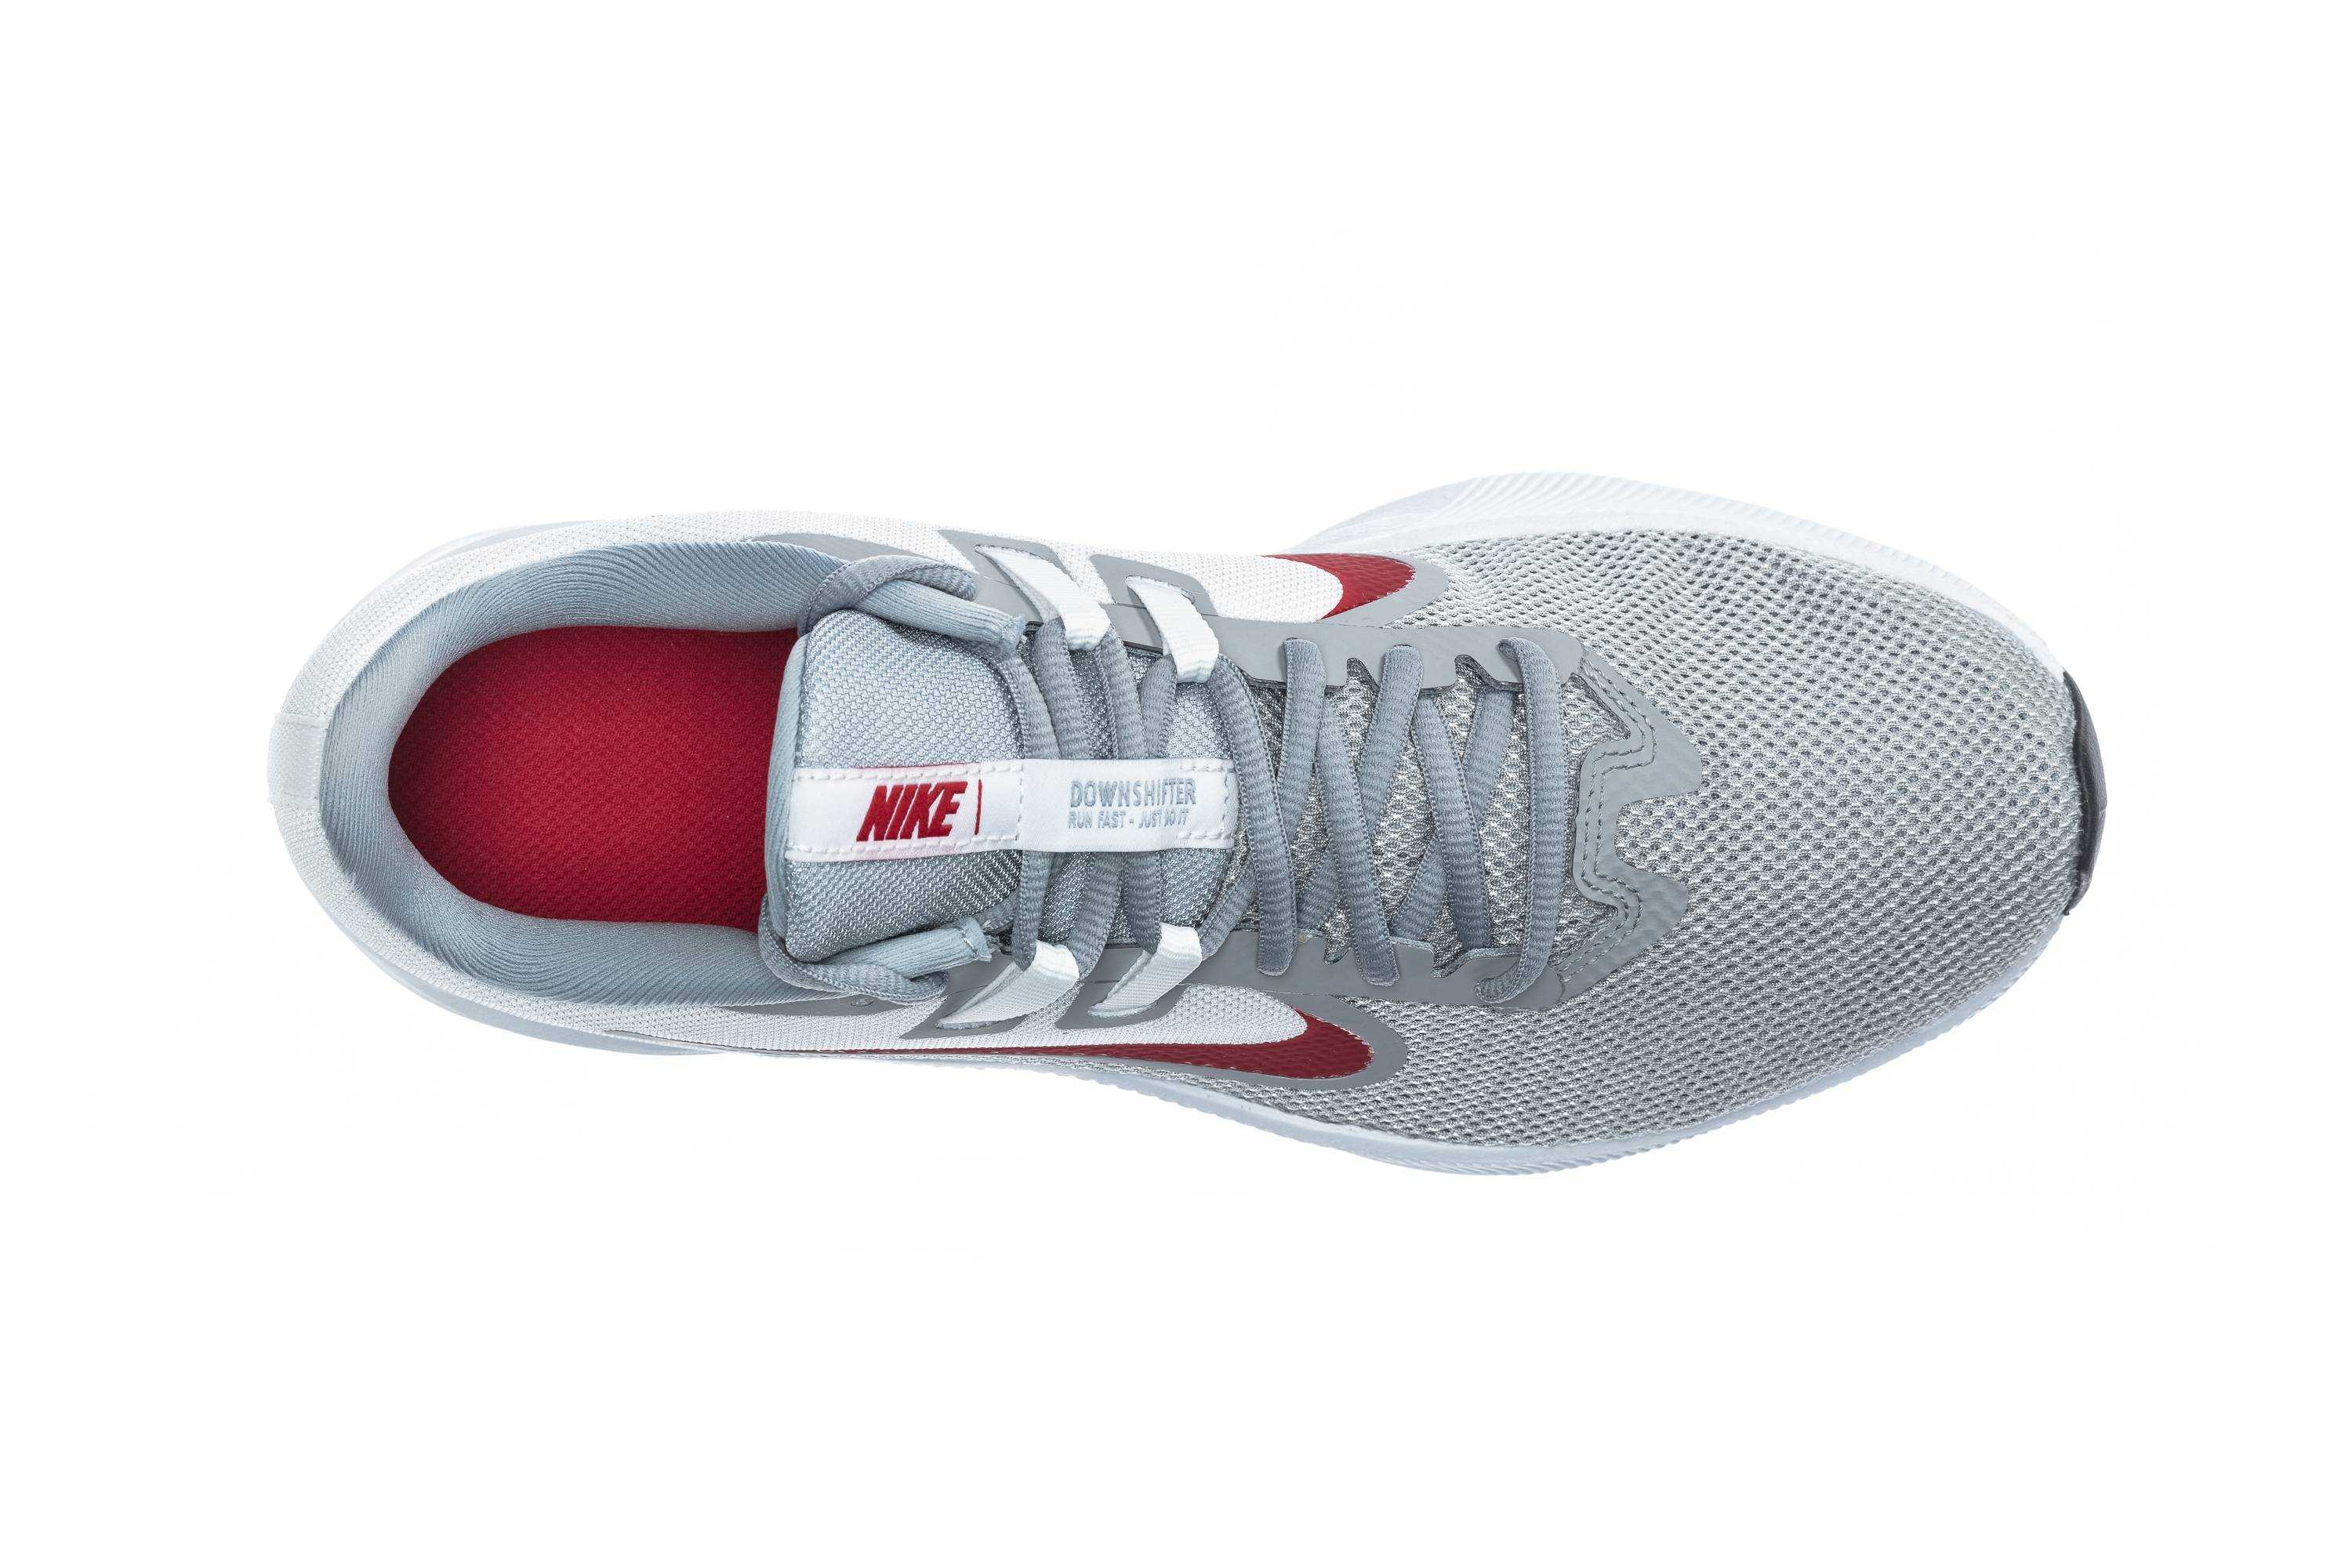 Легендарные кроссовки. Кроссовки Nike Downshifter 9 aq7481-600. Air Jordan 12 ovo (Drake Edition). Легендарные кроссовки Nike. Легендарные кроссовки NFT.